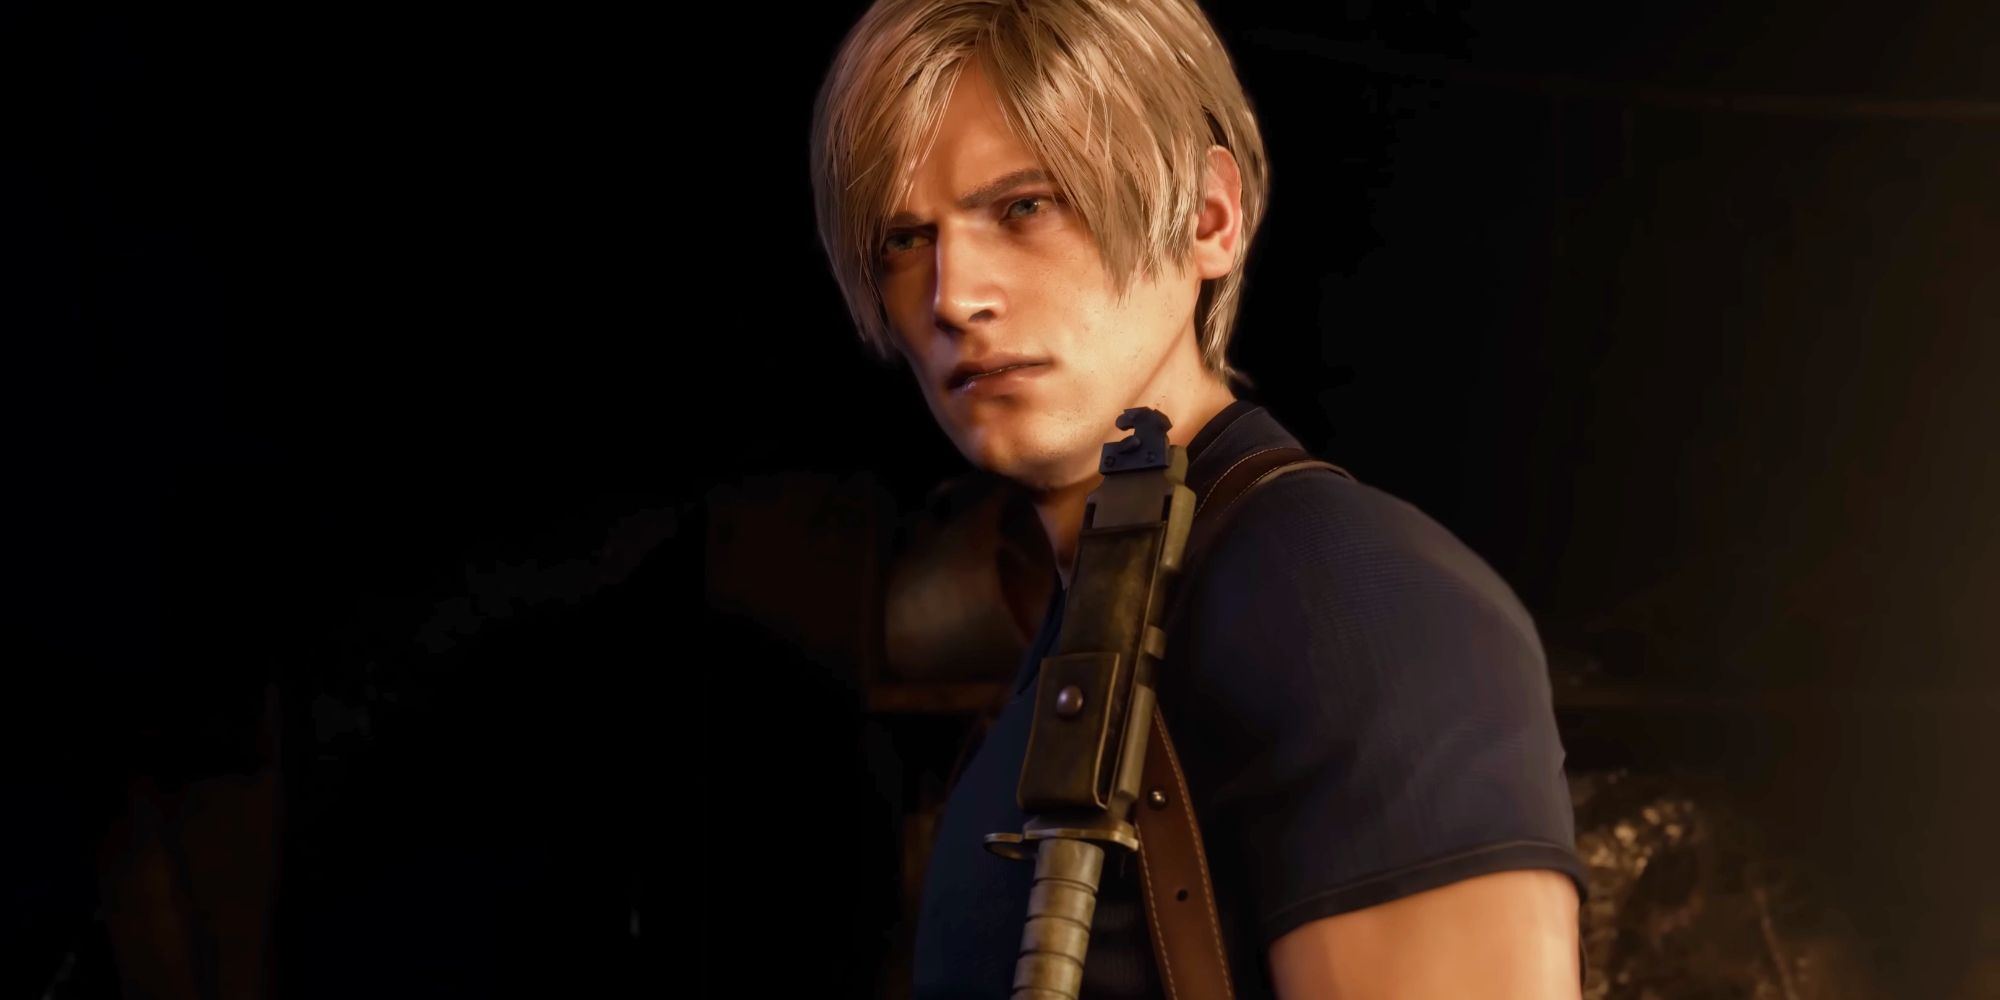 Leon está mirando fuera de la pantalla con una sonrisa en su rostro, sosteniendo un arma